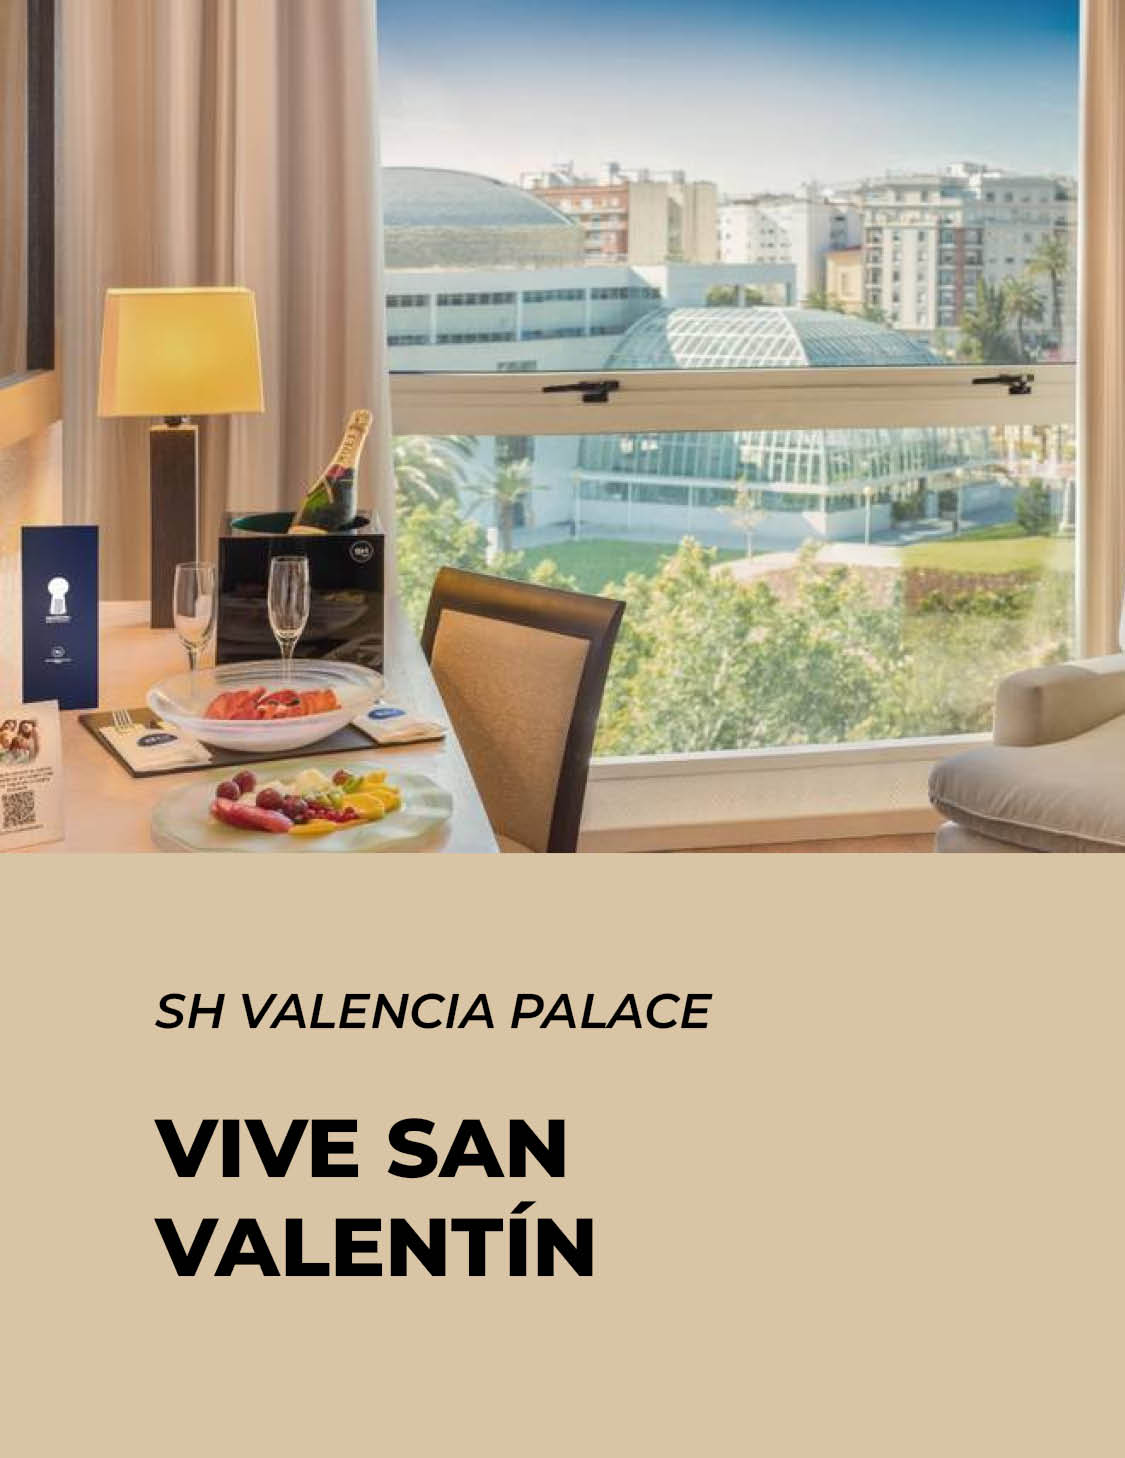 san valentín sh valencia palace